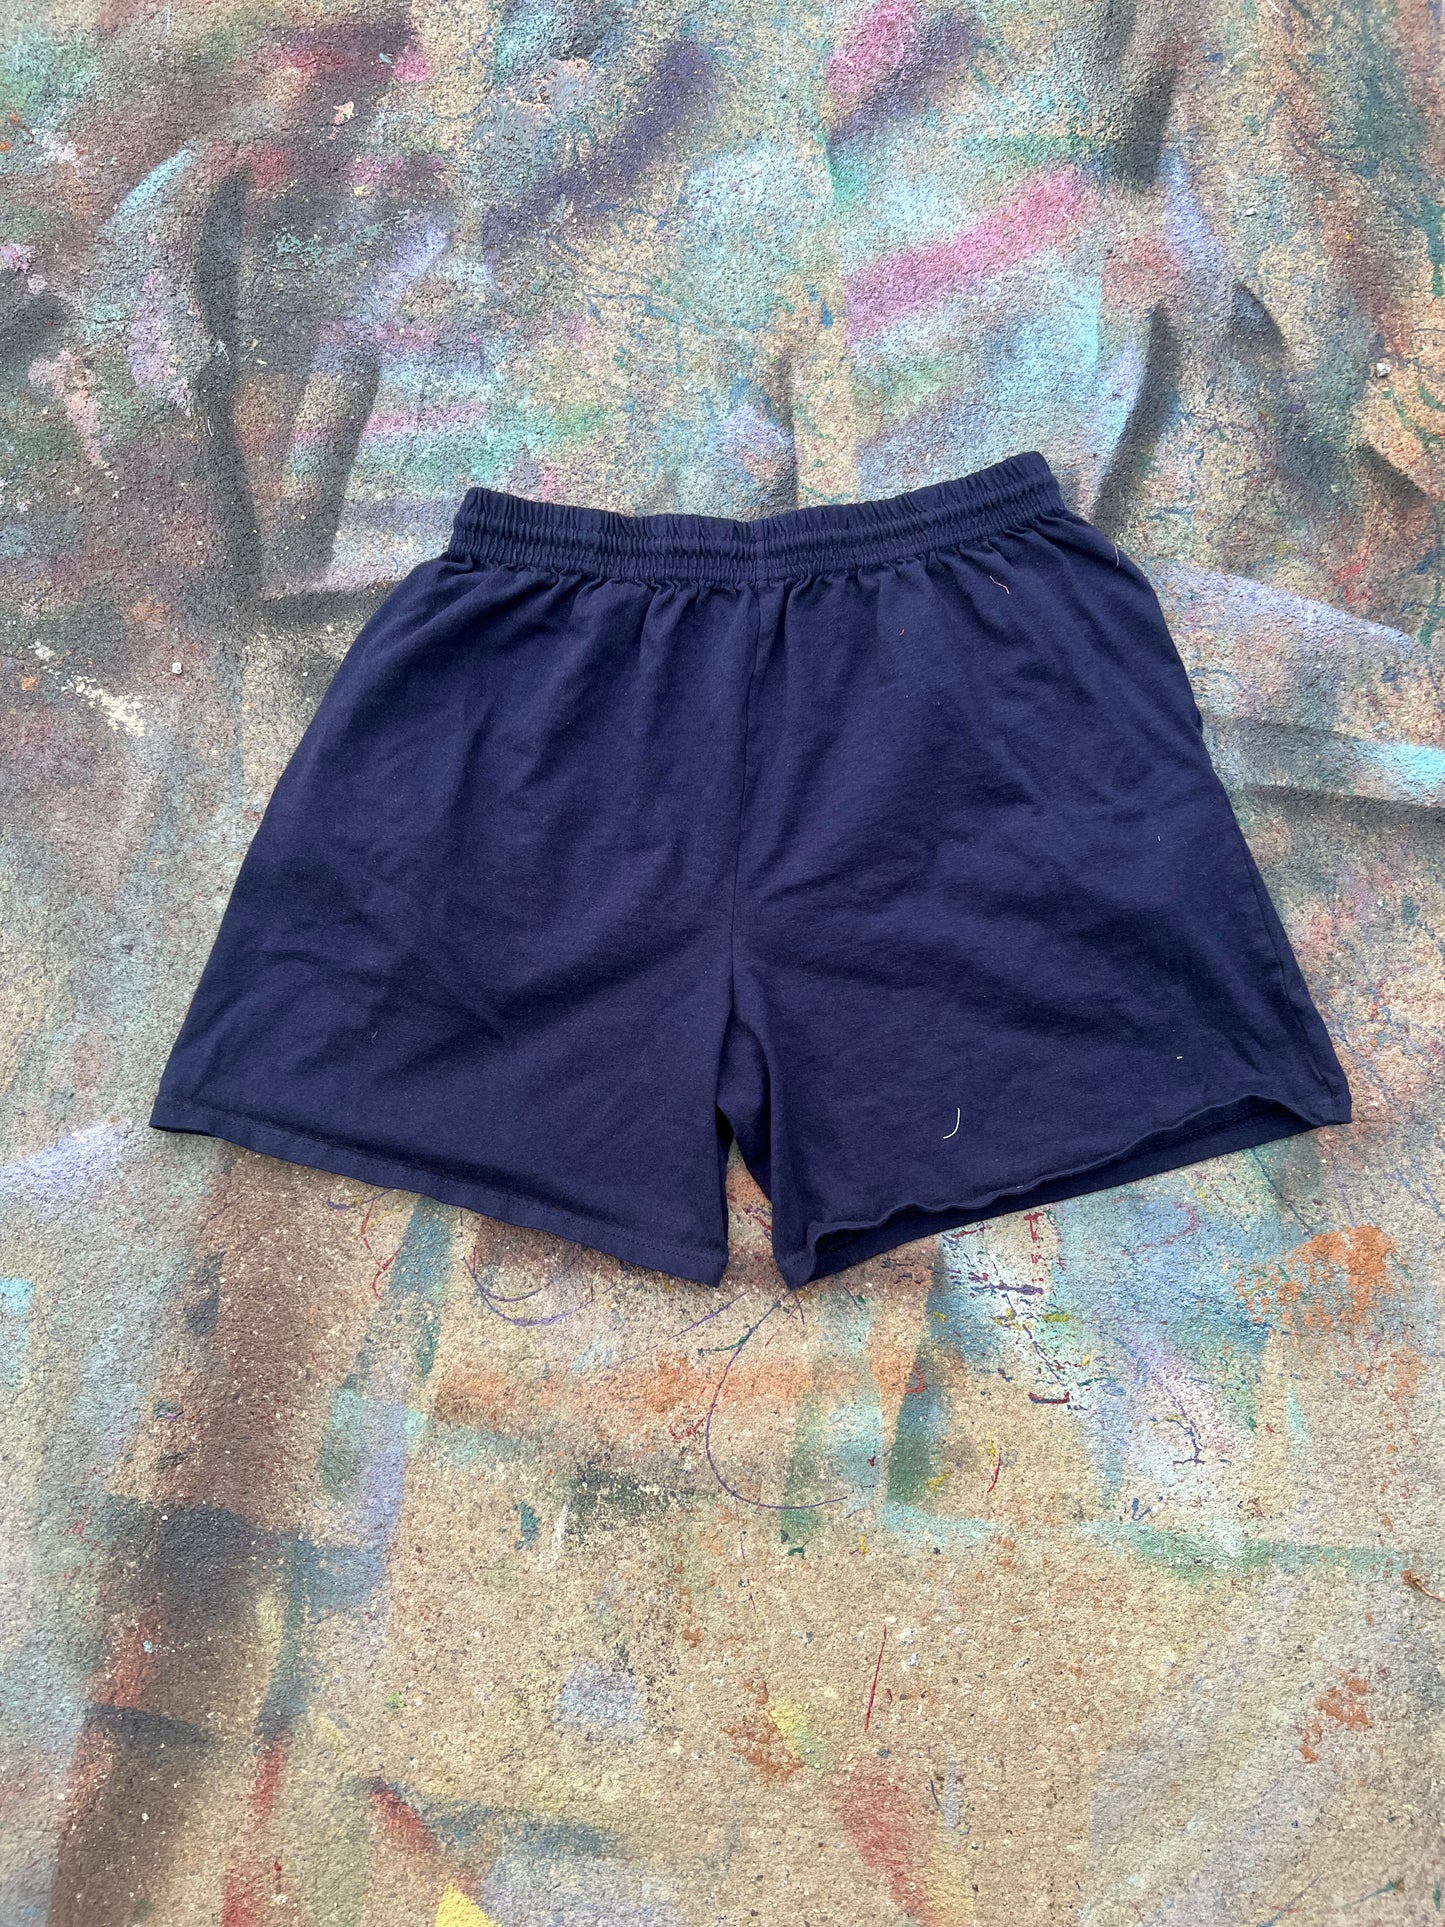 (LS) Wäne Wear Shorts (Multicolor/Navy)- L